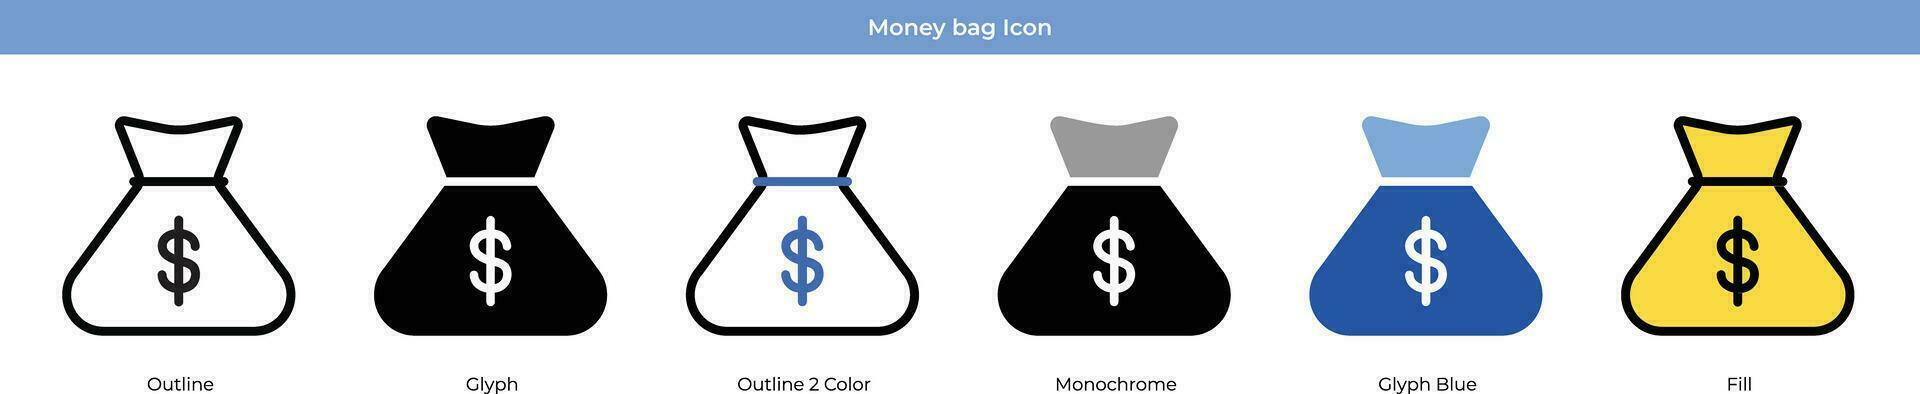 Geld Tasche Symbol einstellen vektor